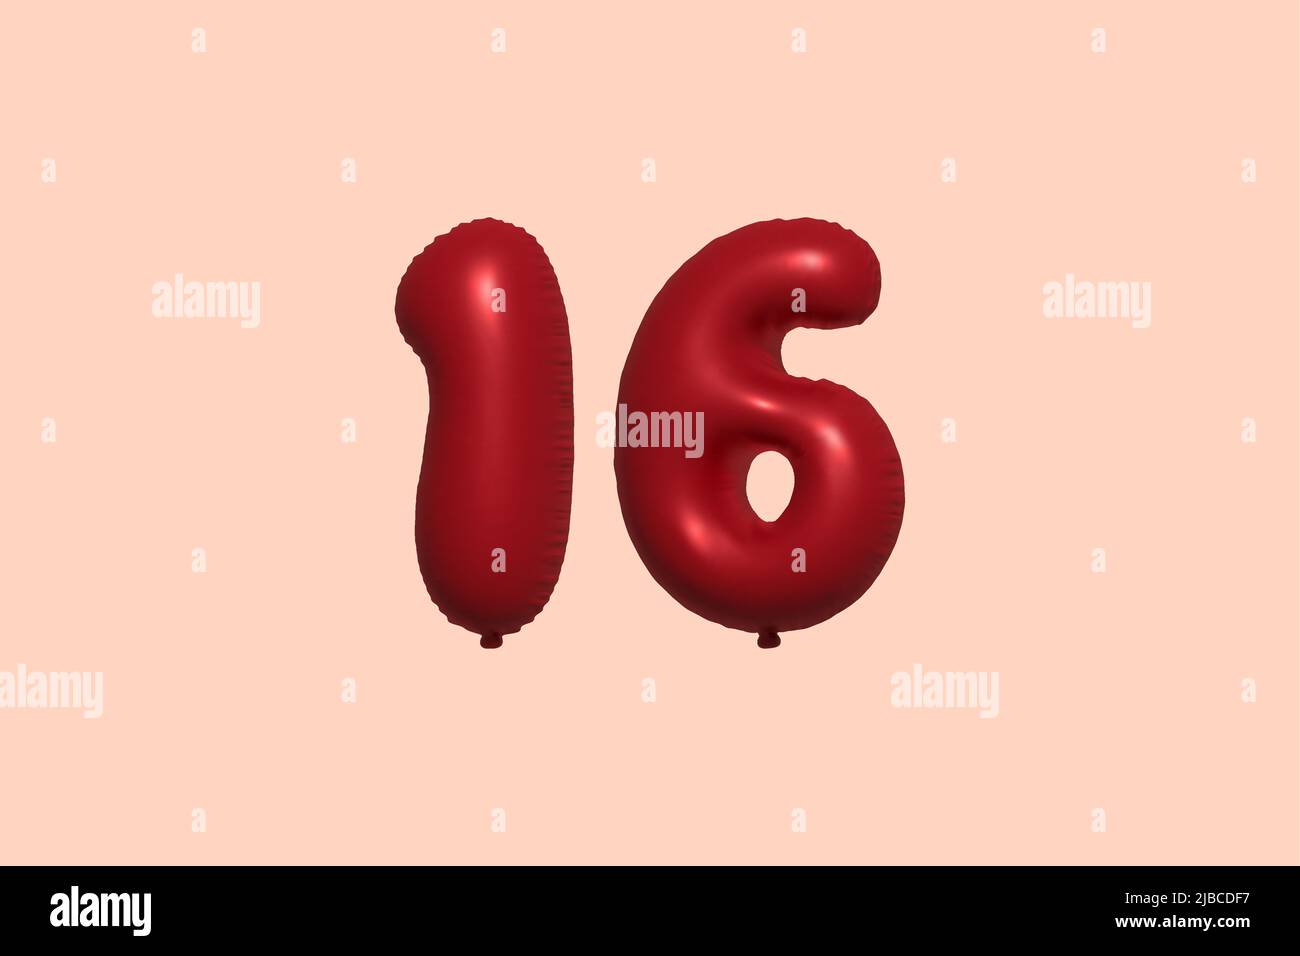 16 3D Zahlenballon aus realistischem metallischem Luftballon 3D Rendering. 3D Rote Heliumballons zum Verkauf Dekoration Party Geburtstag, Jubiläum feiern, Hochzeitsfeiertag. Vektorgrafik Stock Vektor